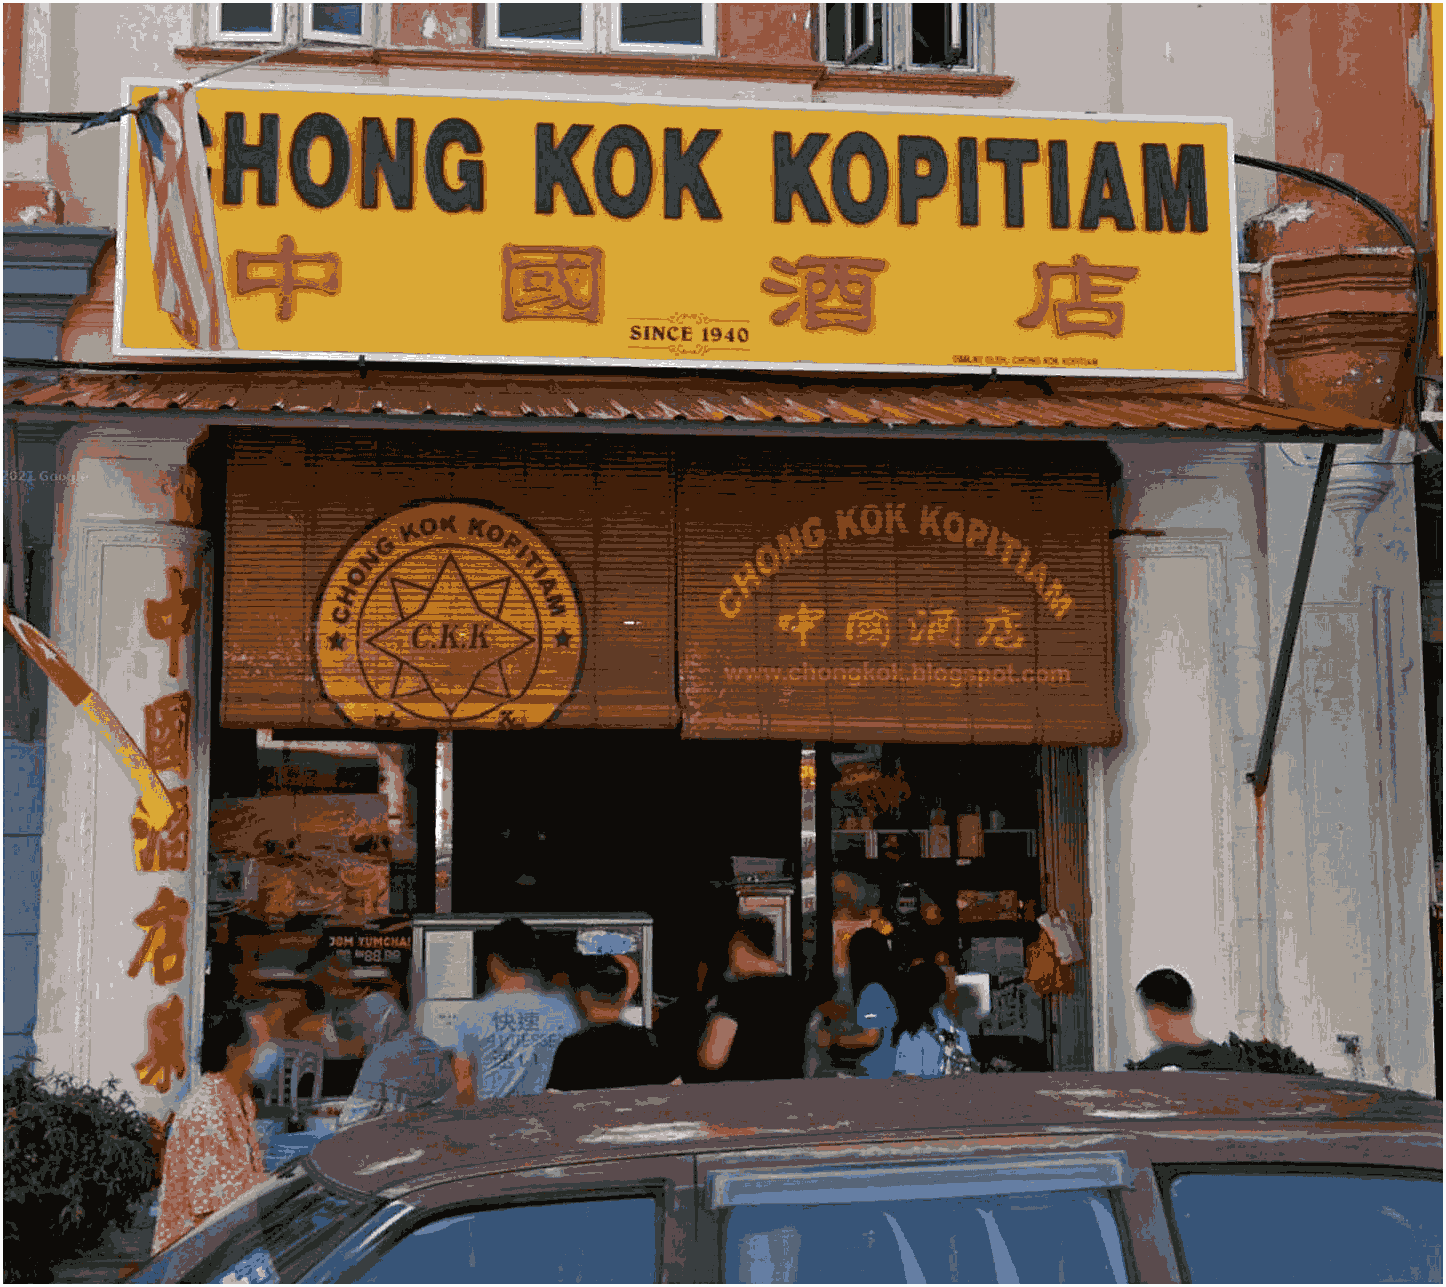  2. Kedai Kopi Chong Kok